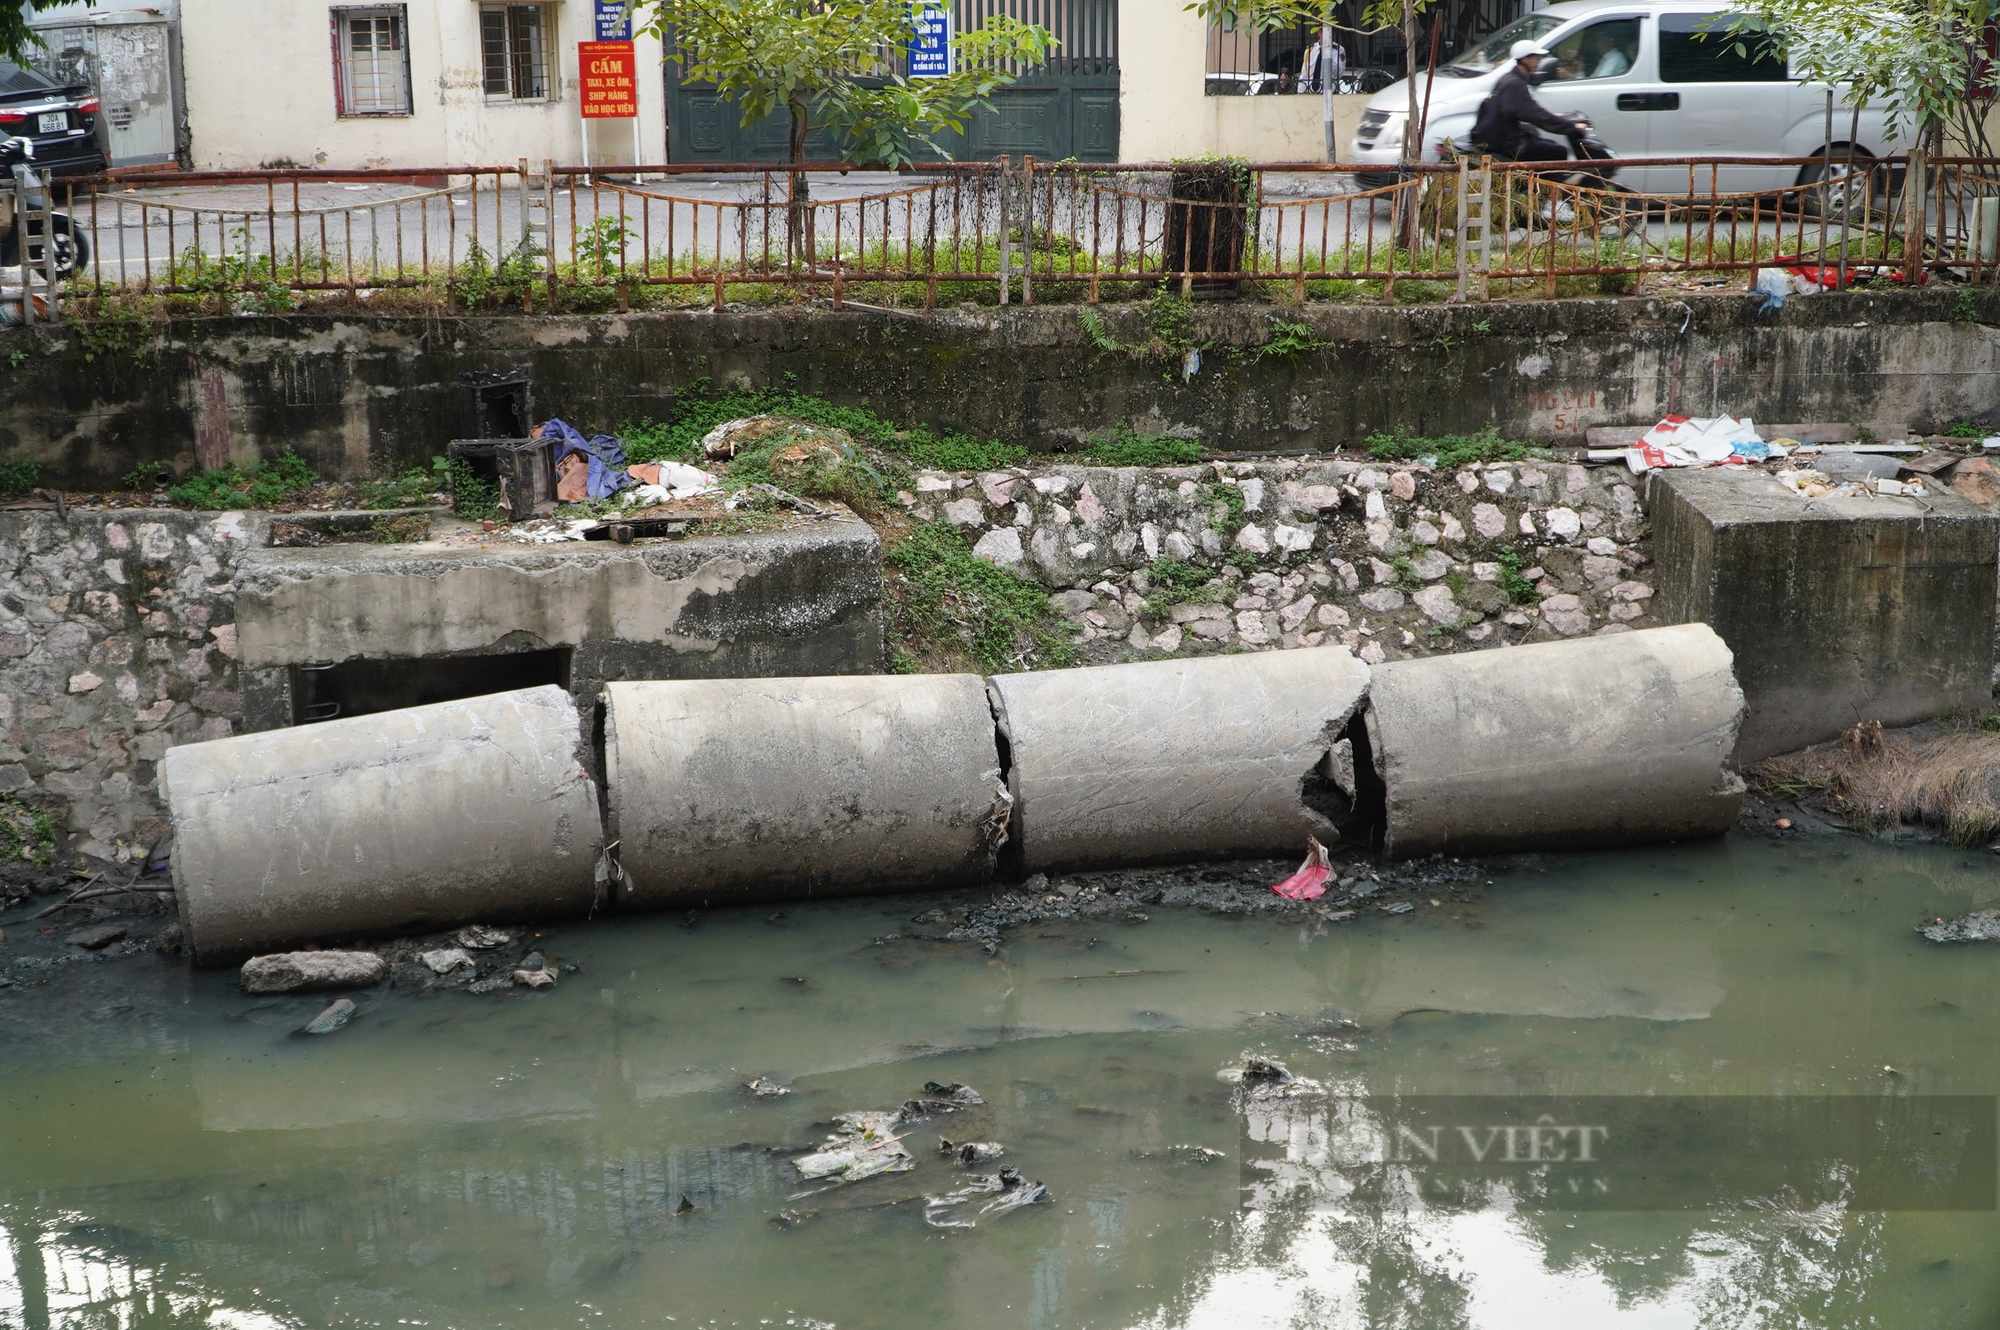  Dự án thu gom nước thải sinh hoạt trên sông Lừ vẫn ngổn ngang sau 3 năm khởi công - Ảnh 5.